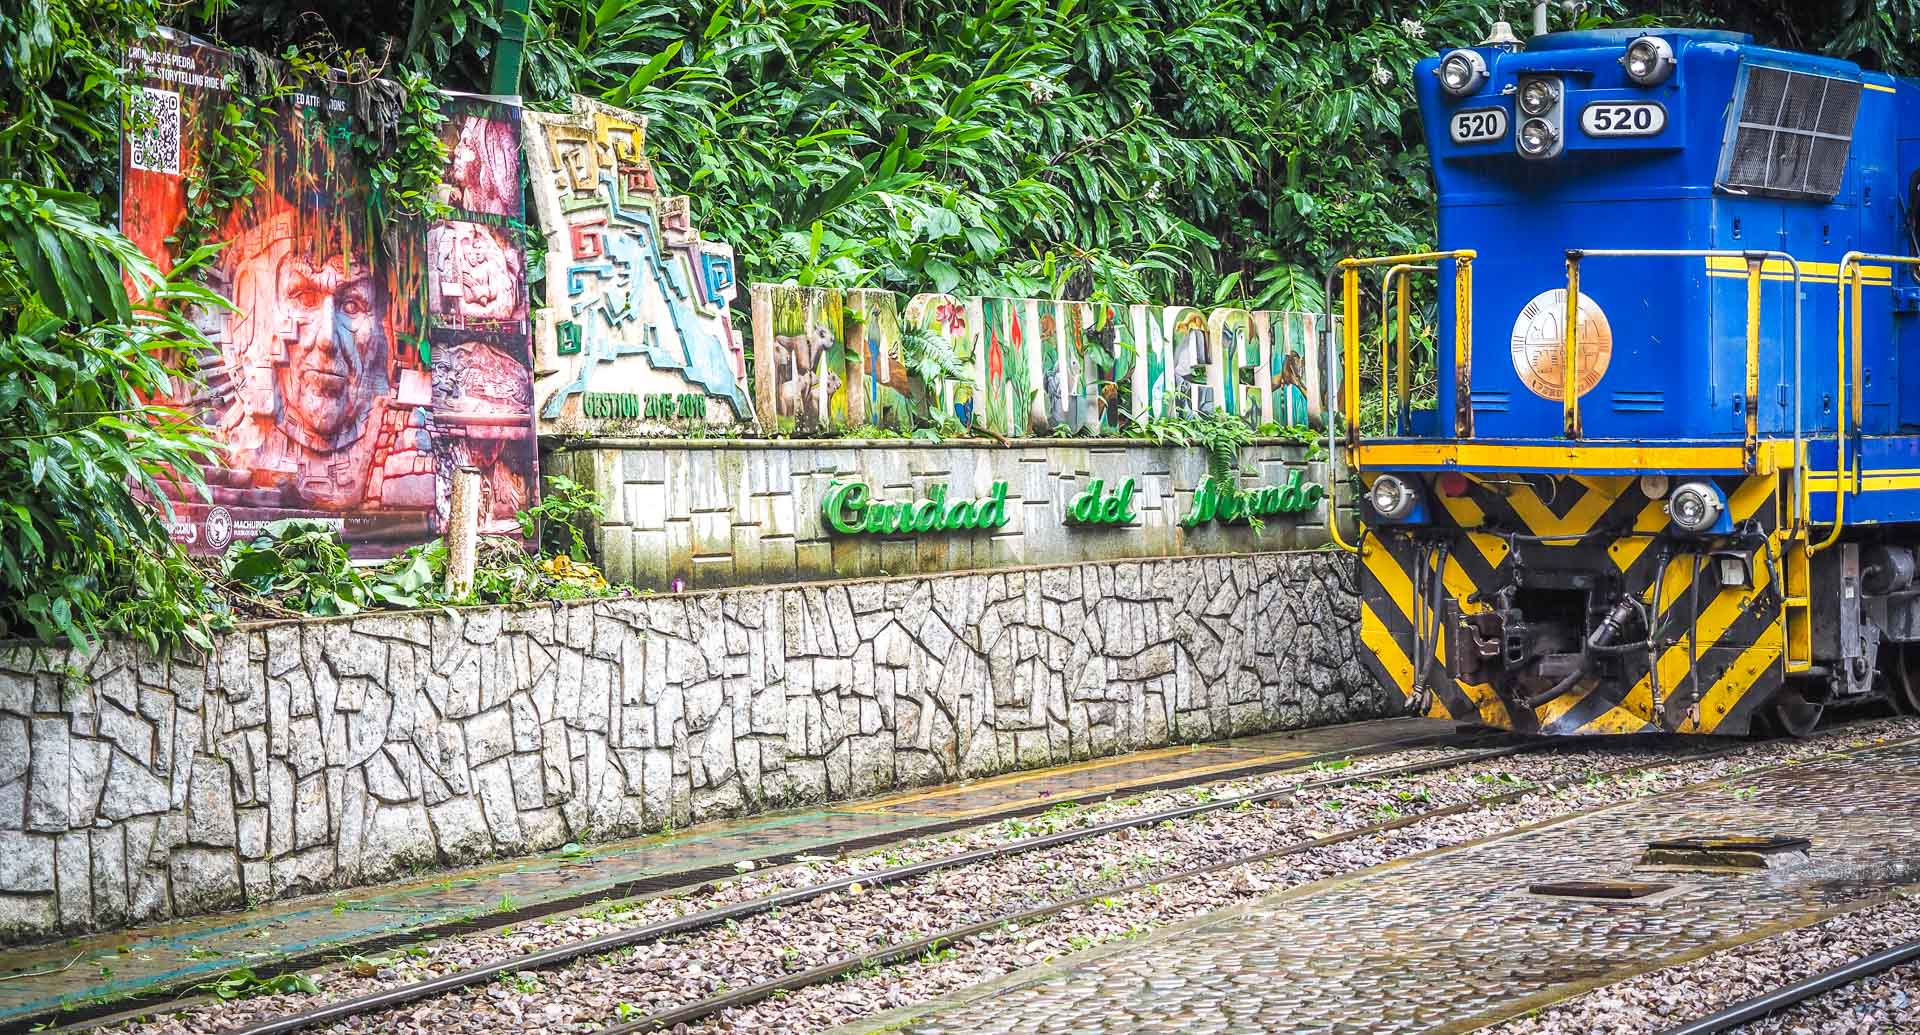 A Machu Picchu sign and blue train parked in Aguas Calientes Peru